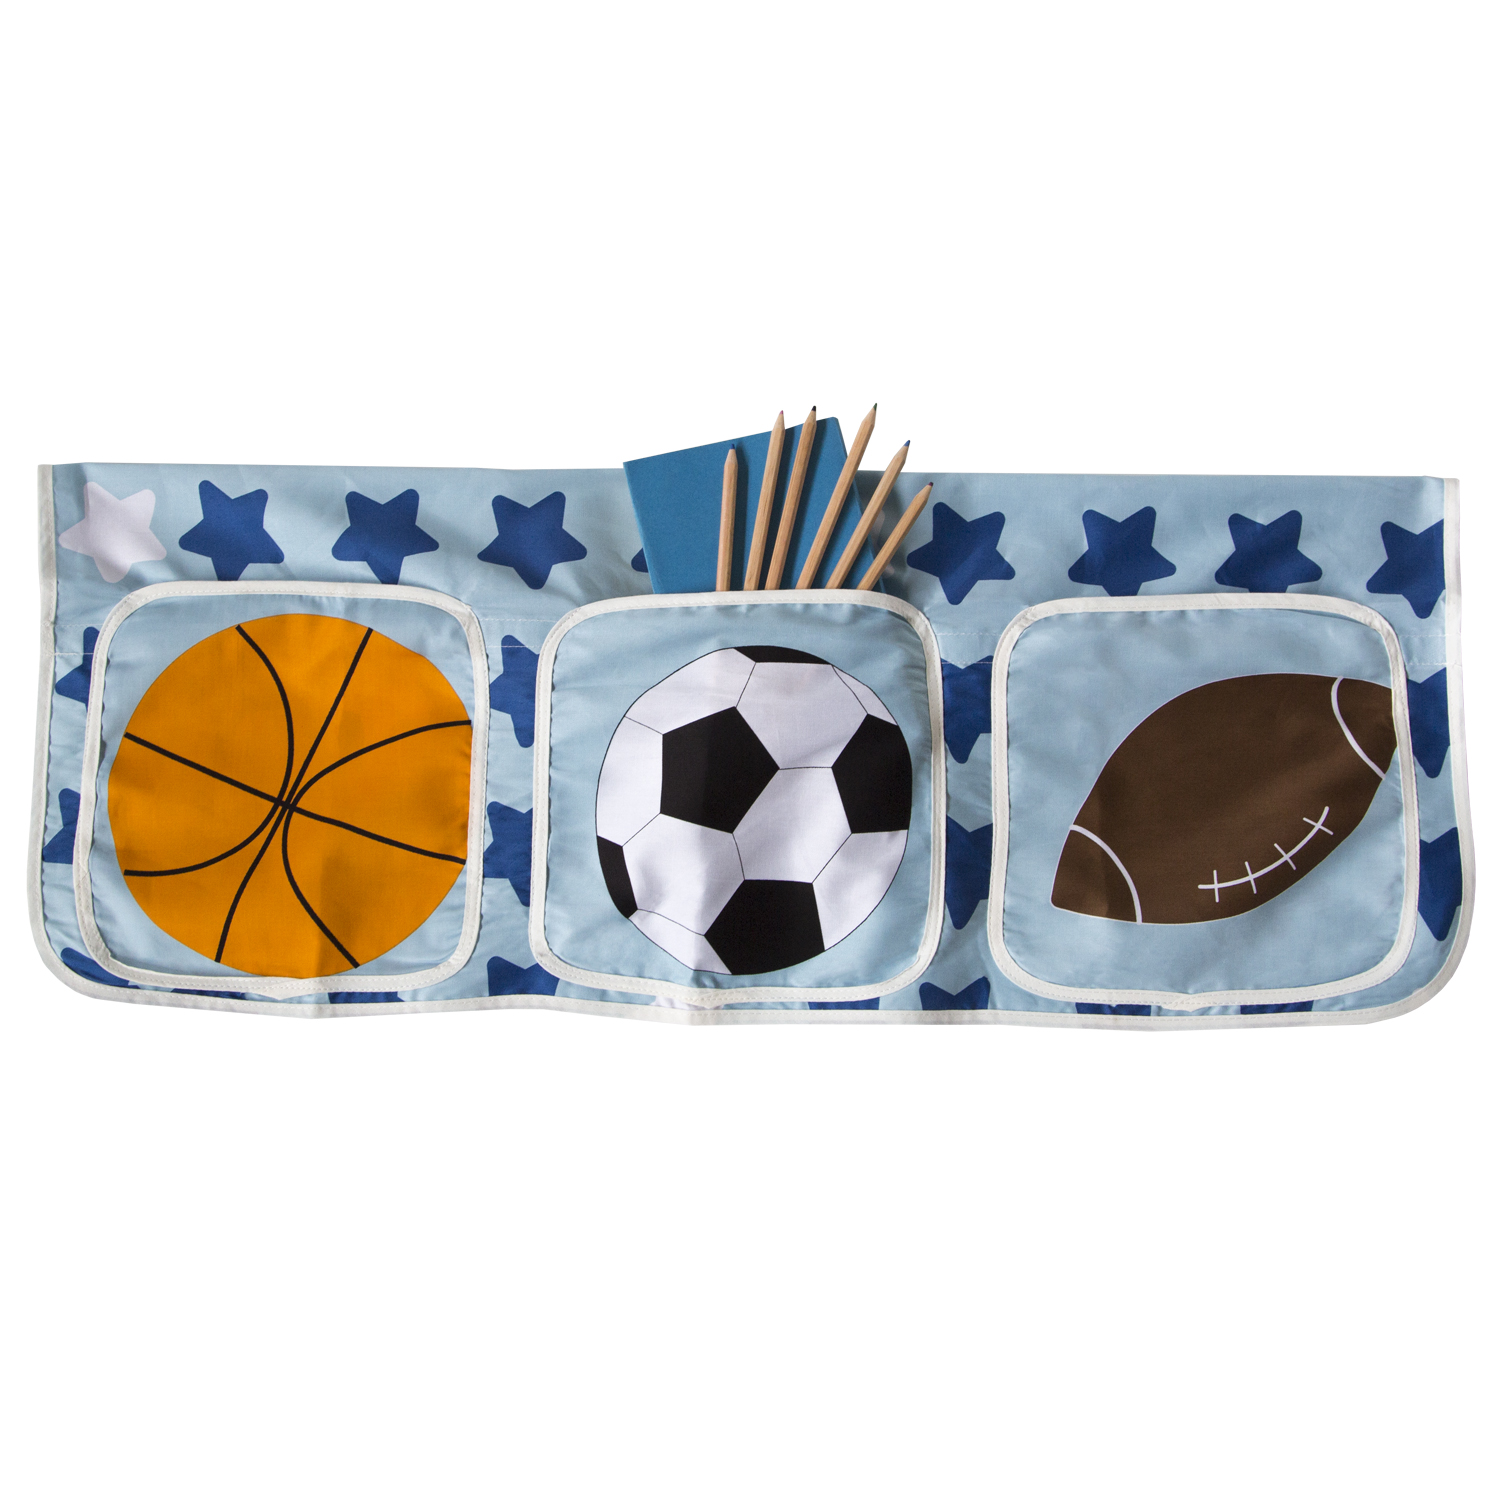 Accessoires De Lit Sac En Tissu Lit D'Enfant Lit Superposé Literie Blue Football